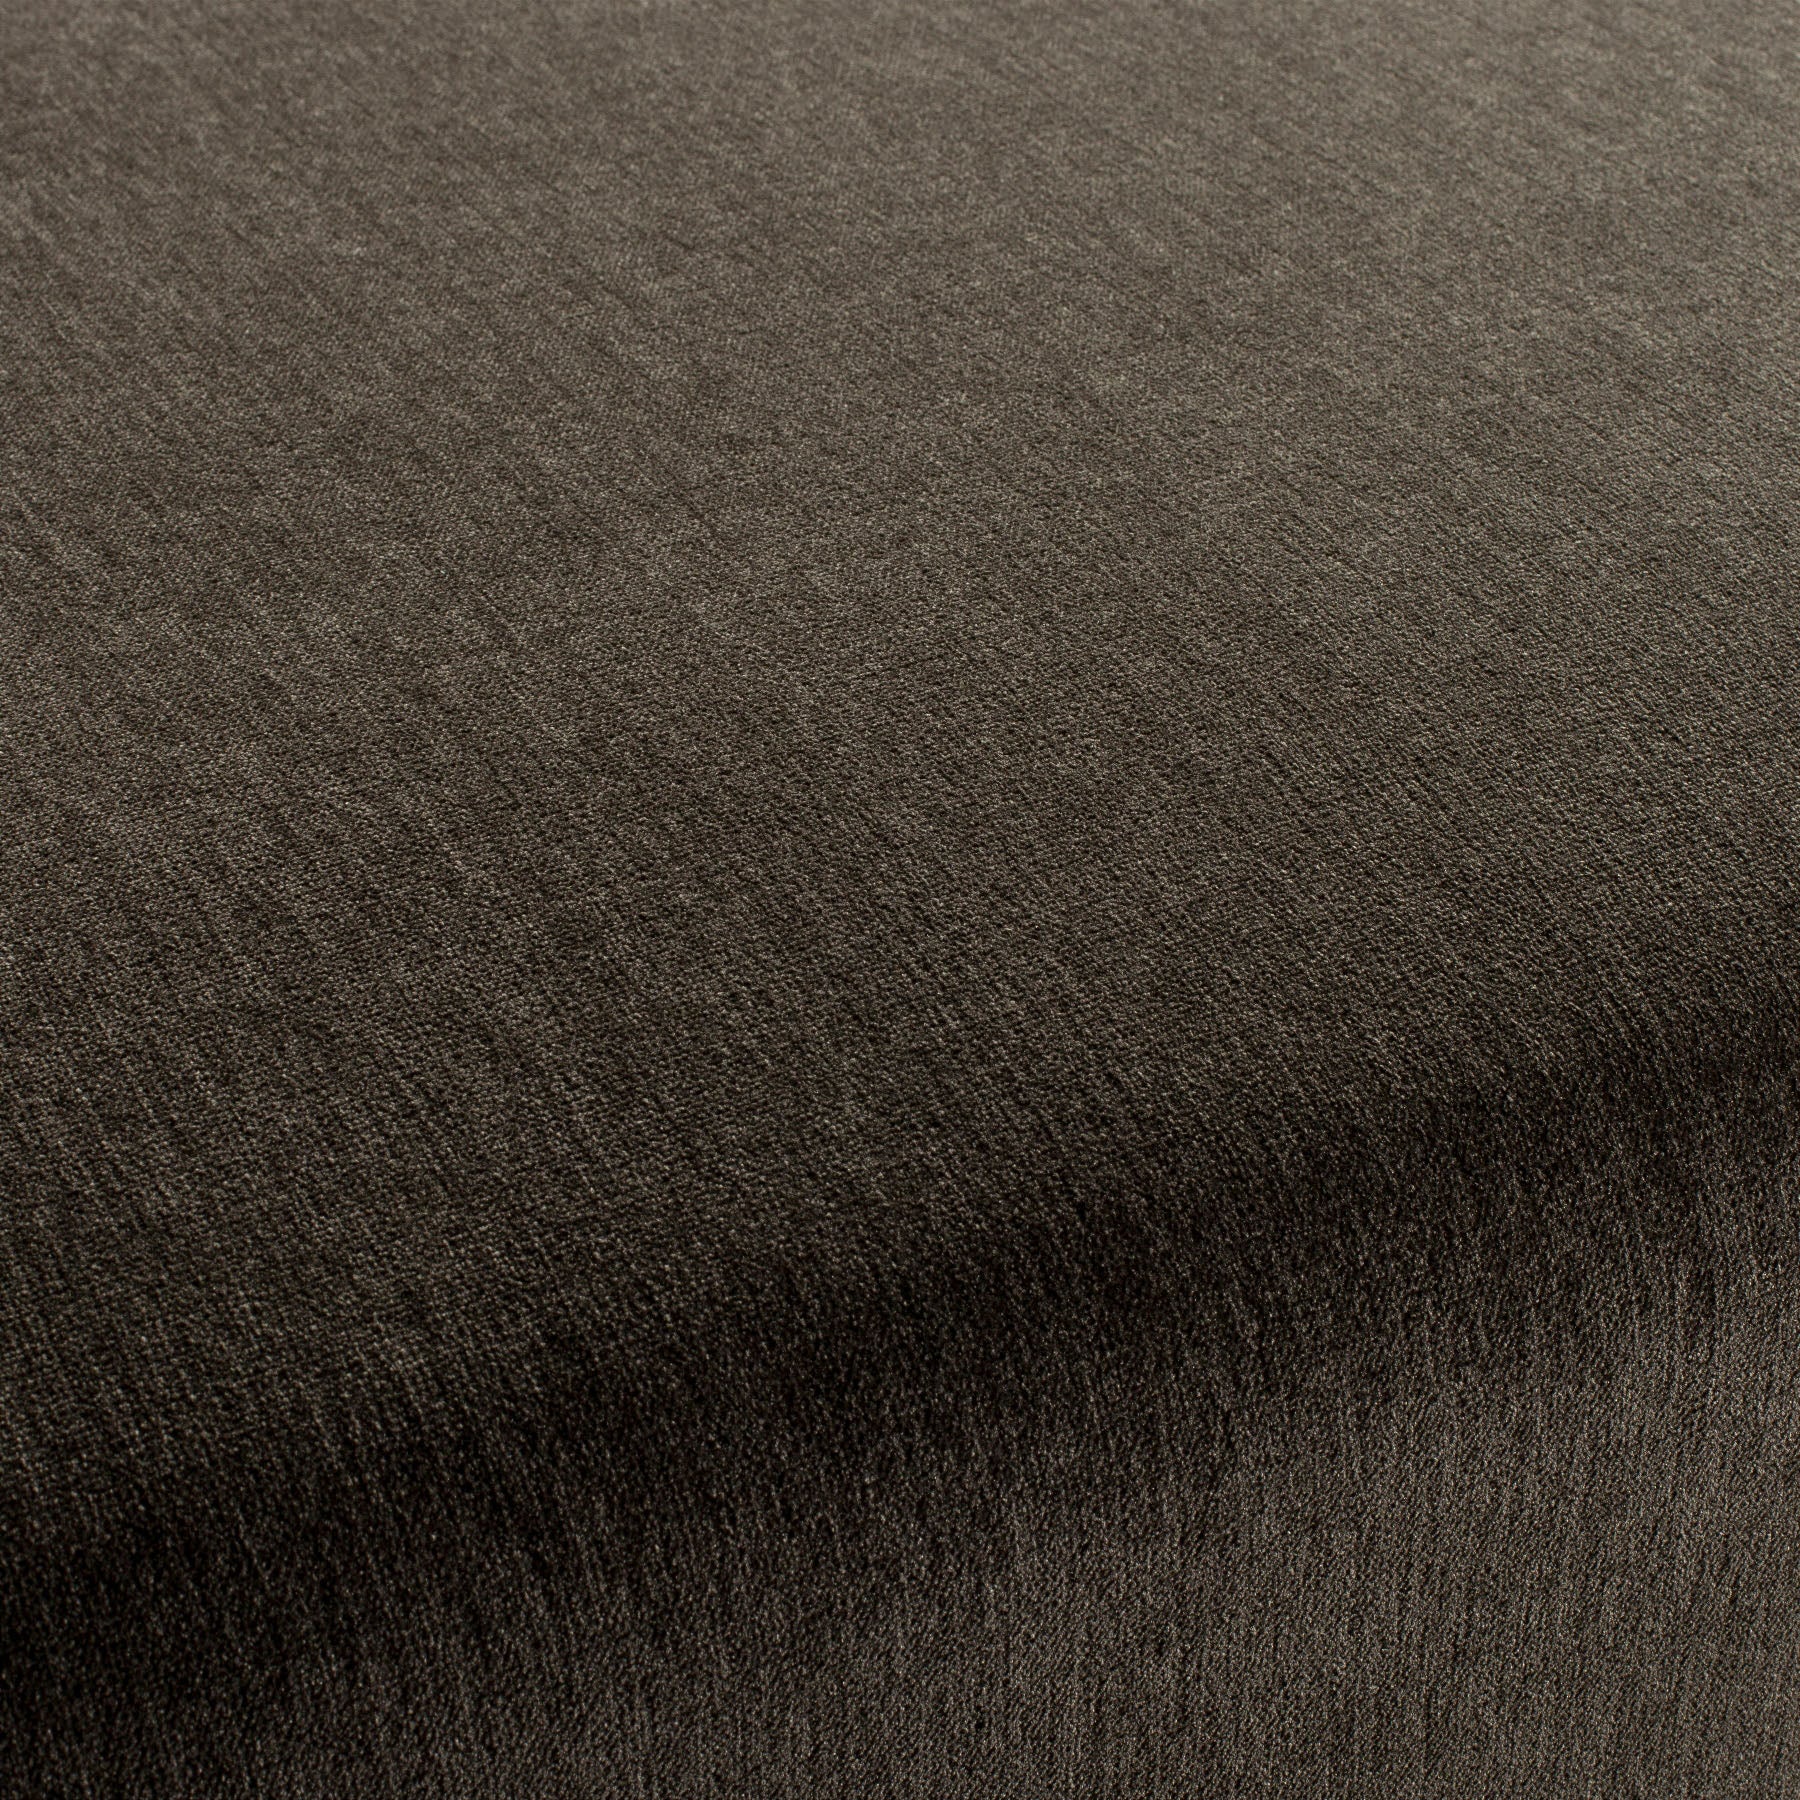 Chenillo 1-1281-022 Fabric